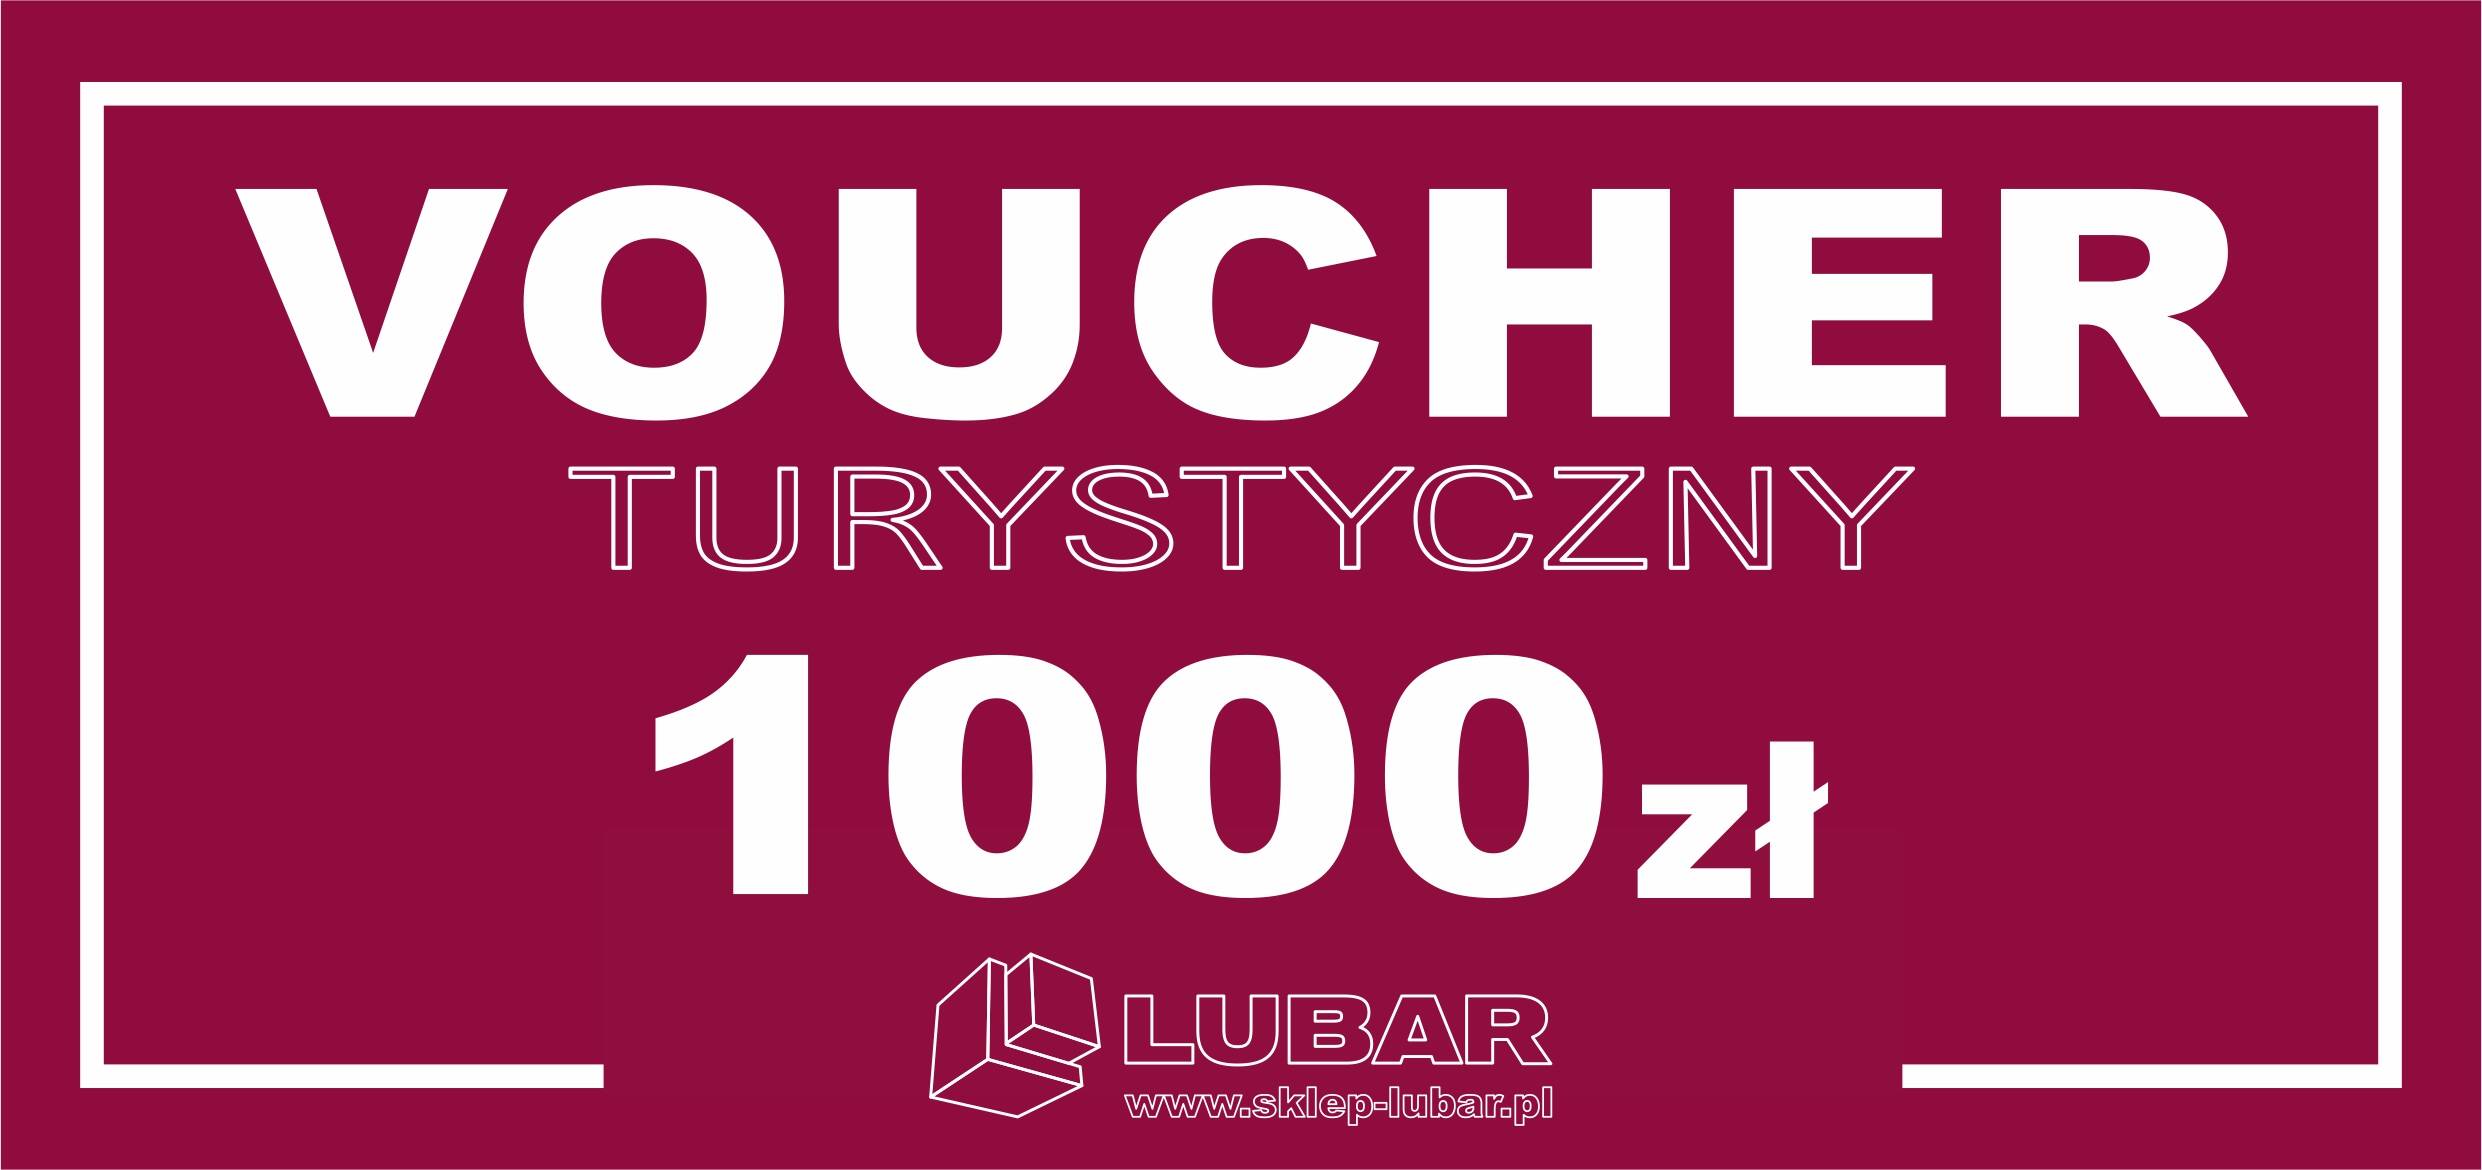 Voucher Turystyczny 1000 zł e-sklep LUBAR